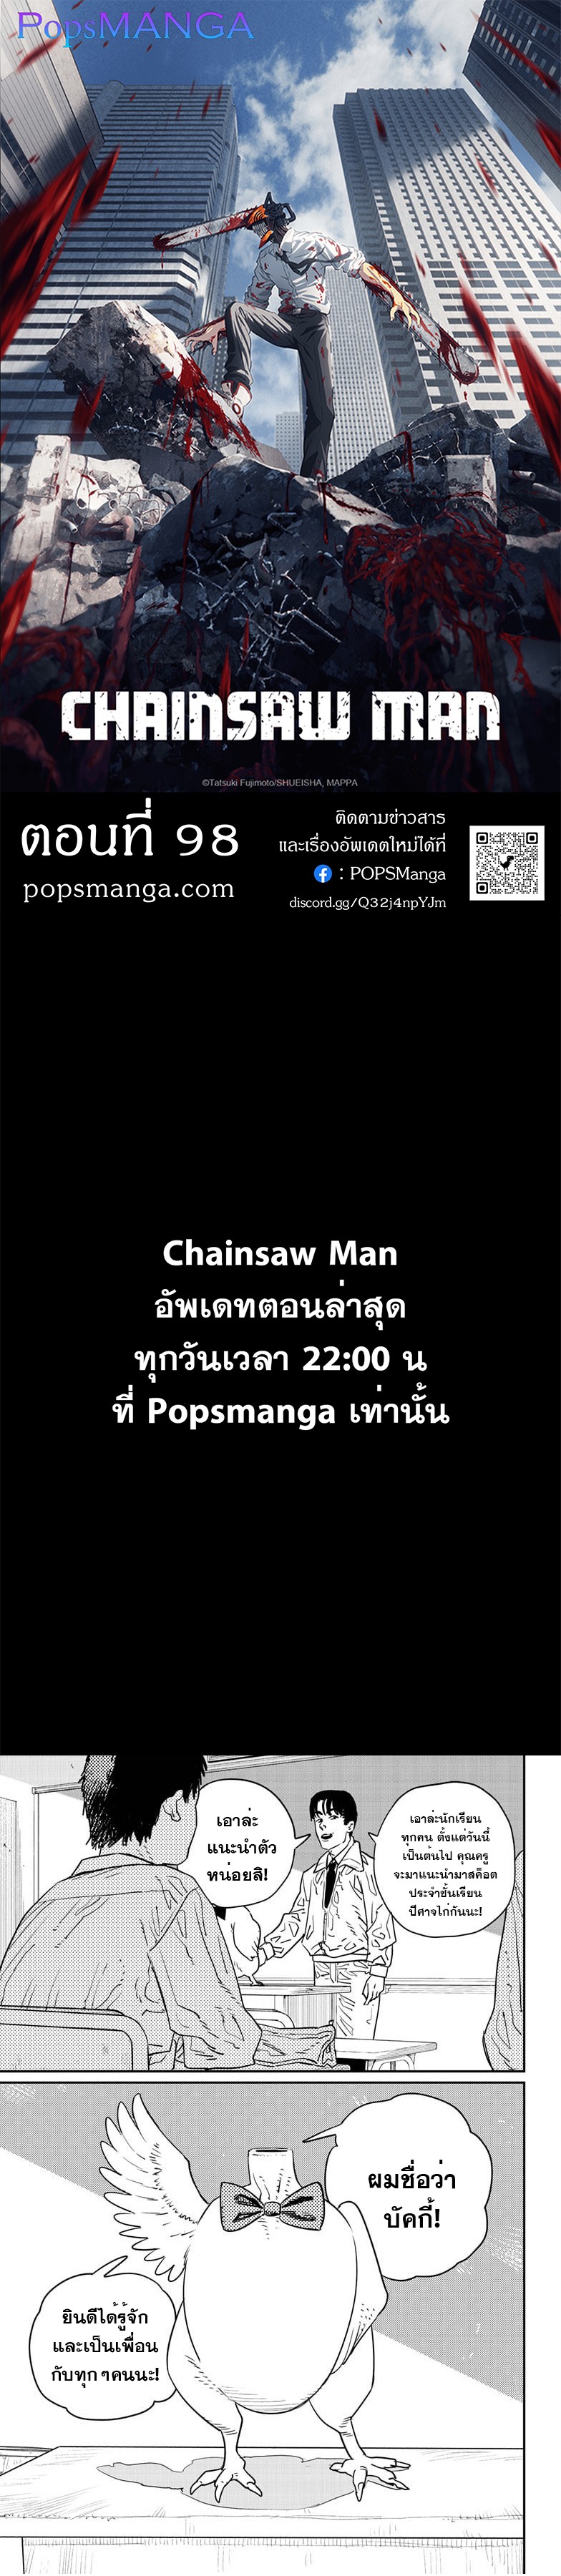 Chainsaw Man 98 (1)